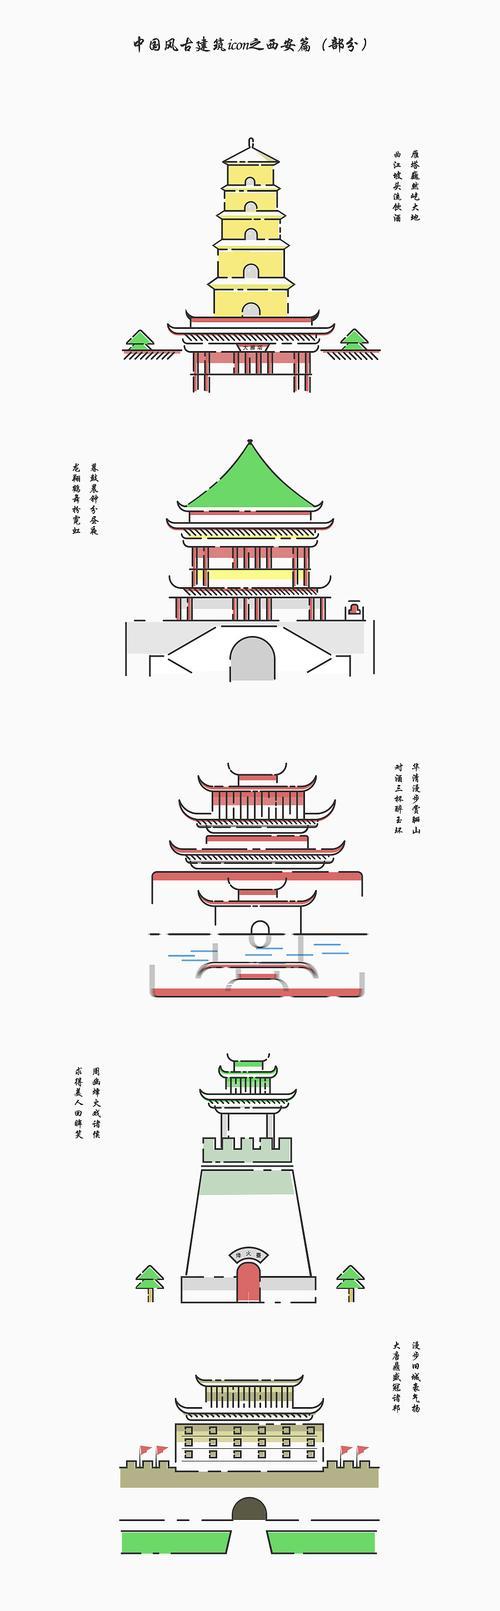 中式建筑简笔画